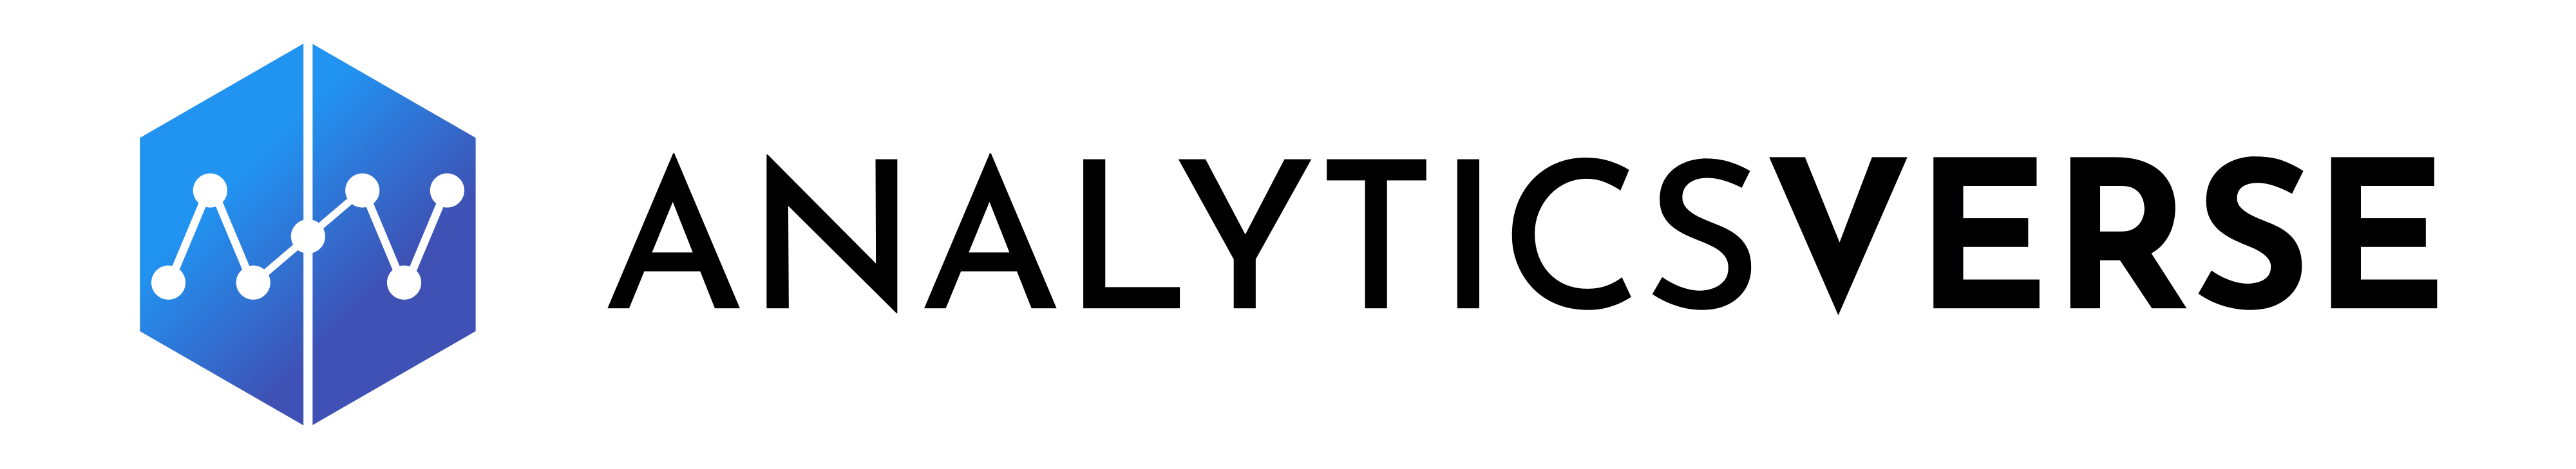 AnalyticsVerse logo